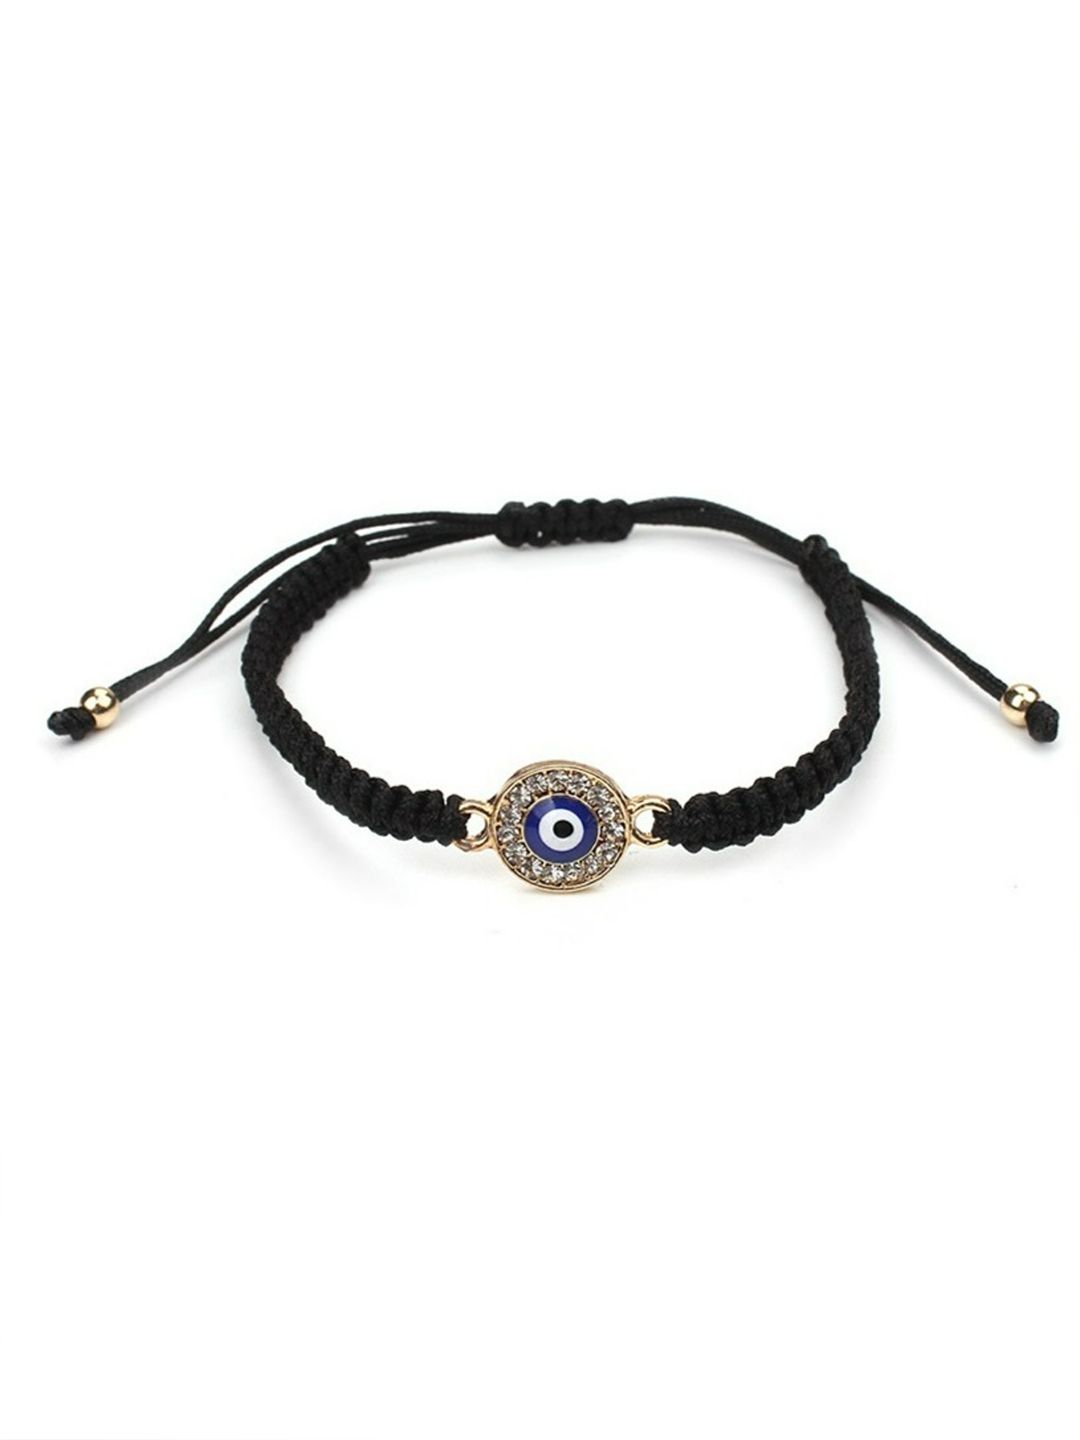 EL REGALO Unisex Black & Blue Charm Evil Eye Bracelet Price in India